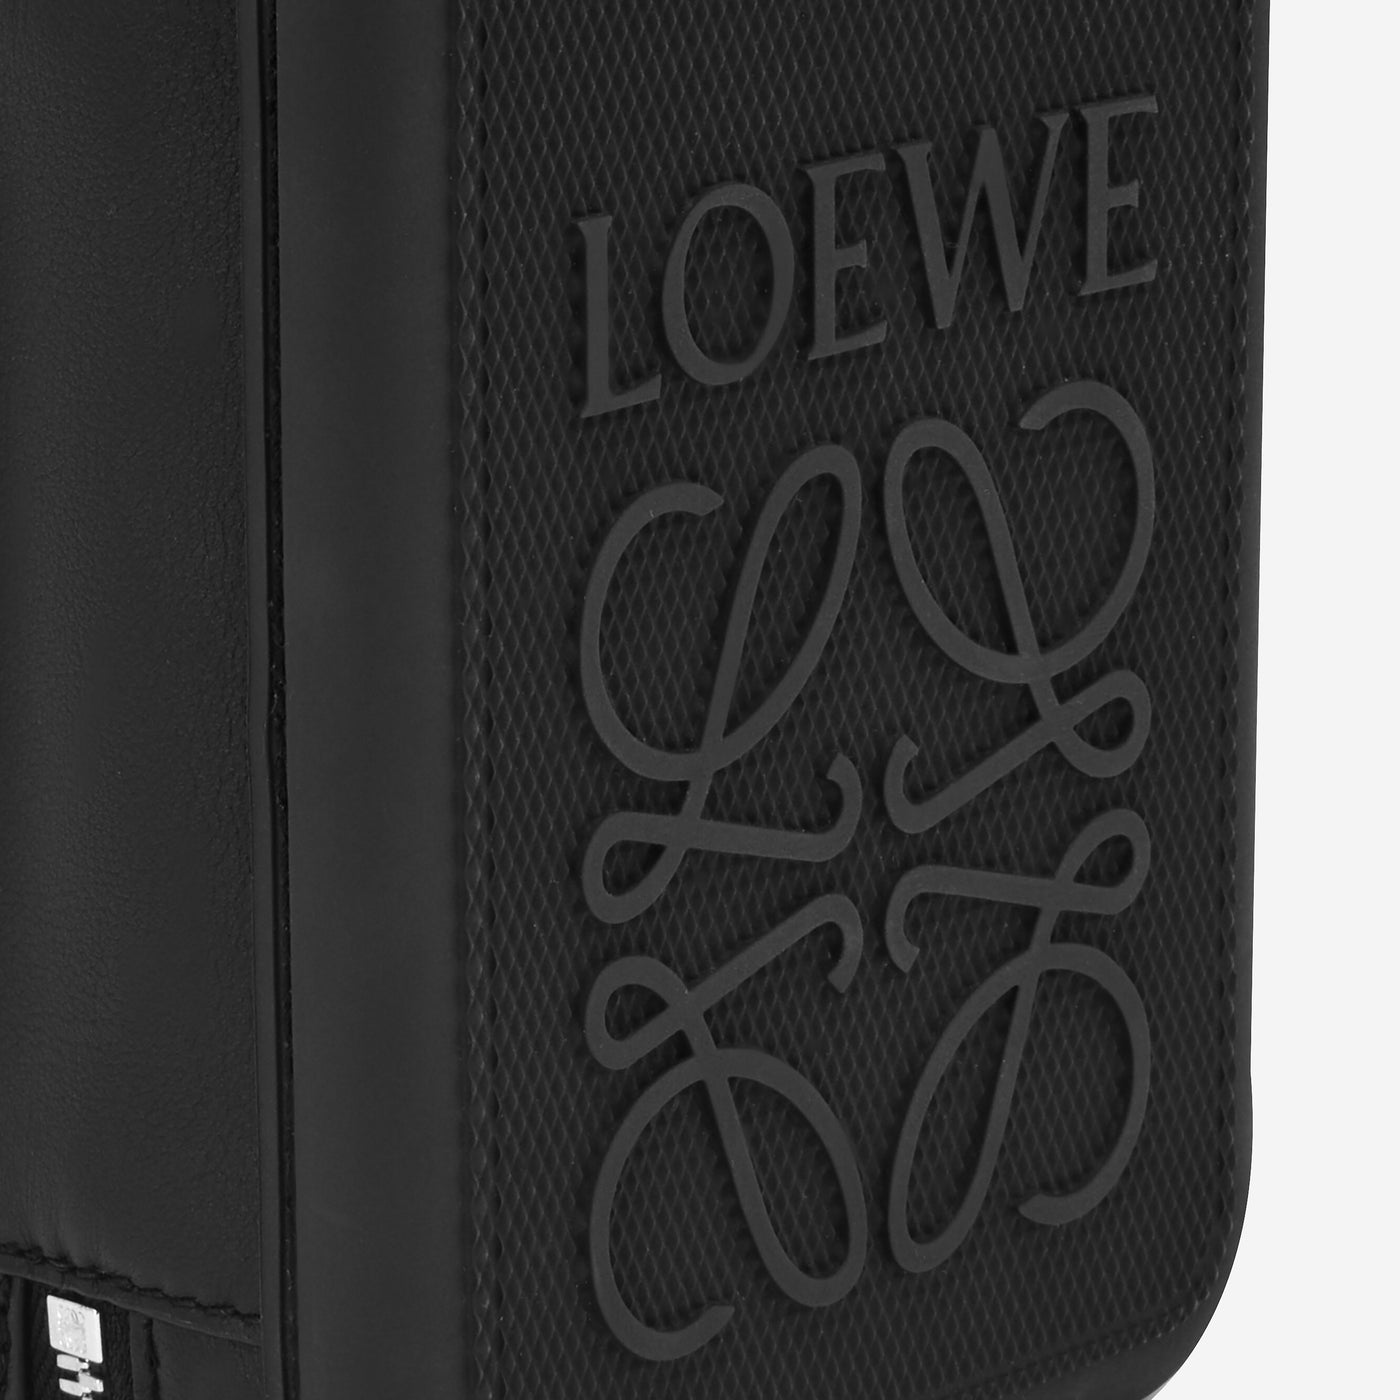 Loewe Molded Sling Bag